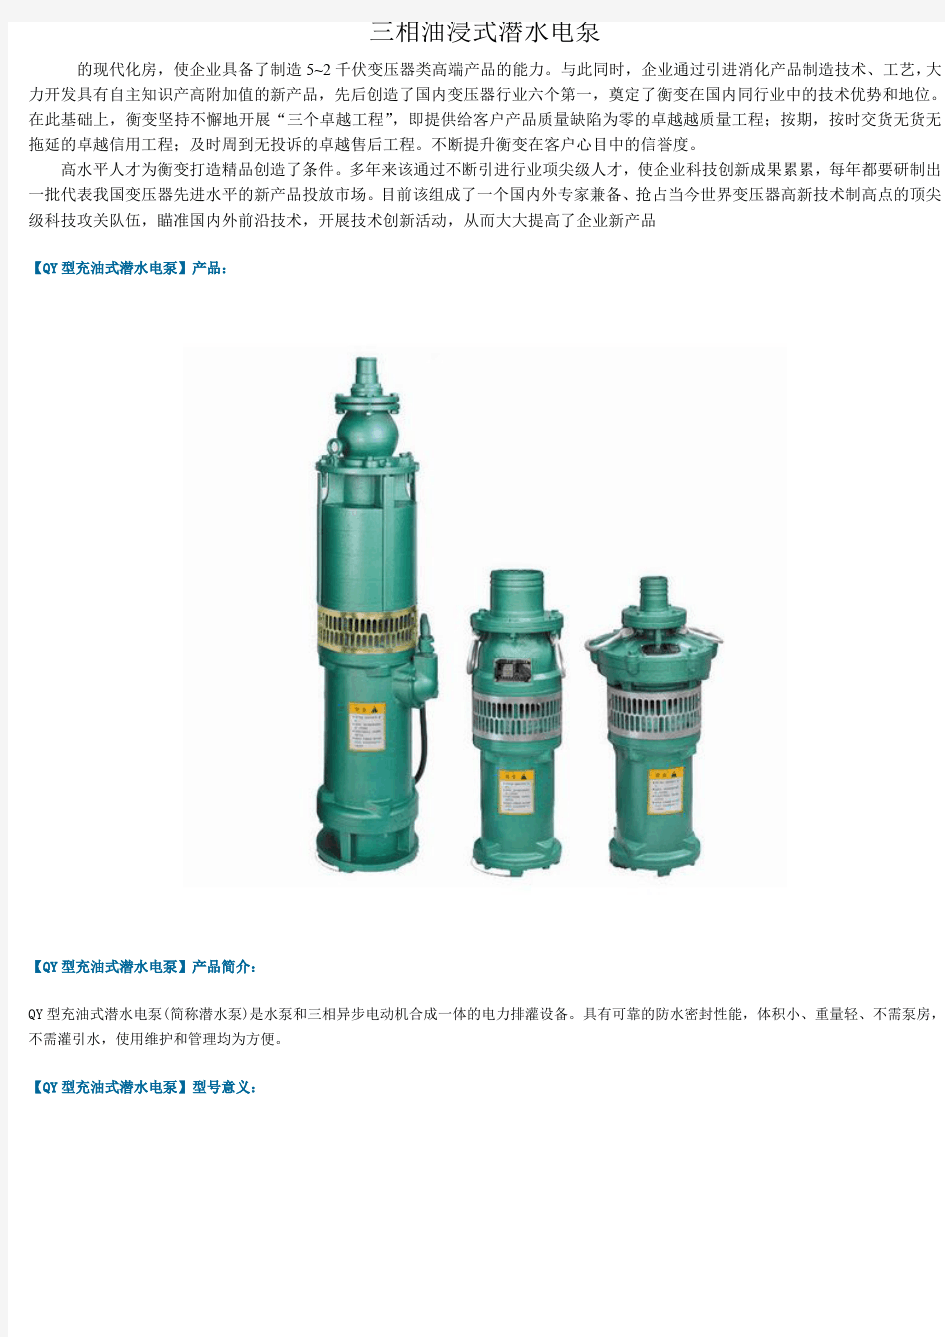 三相油浸式潜水电泵